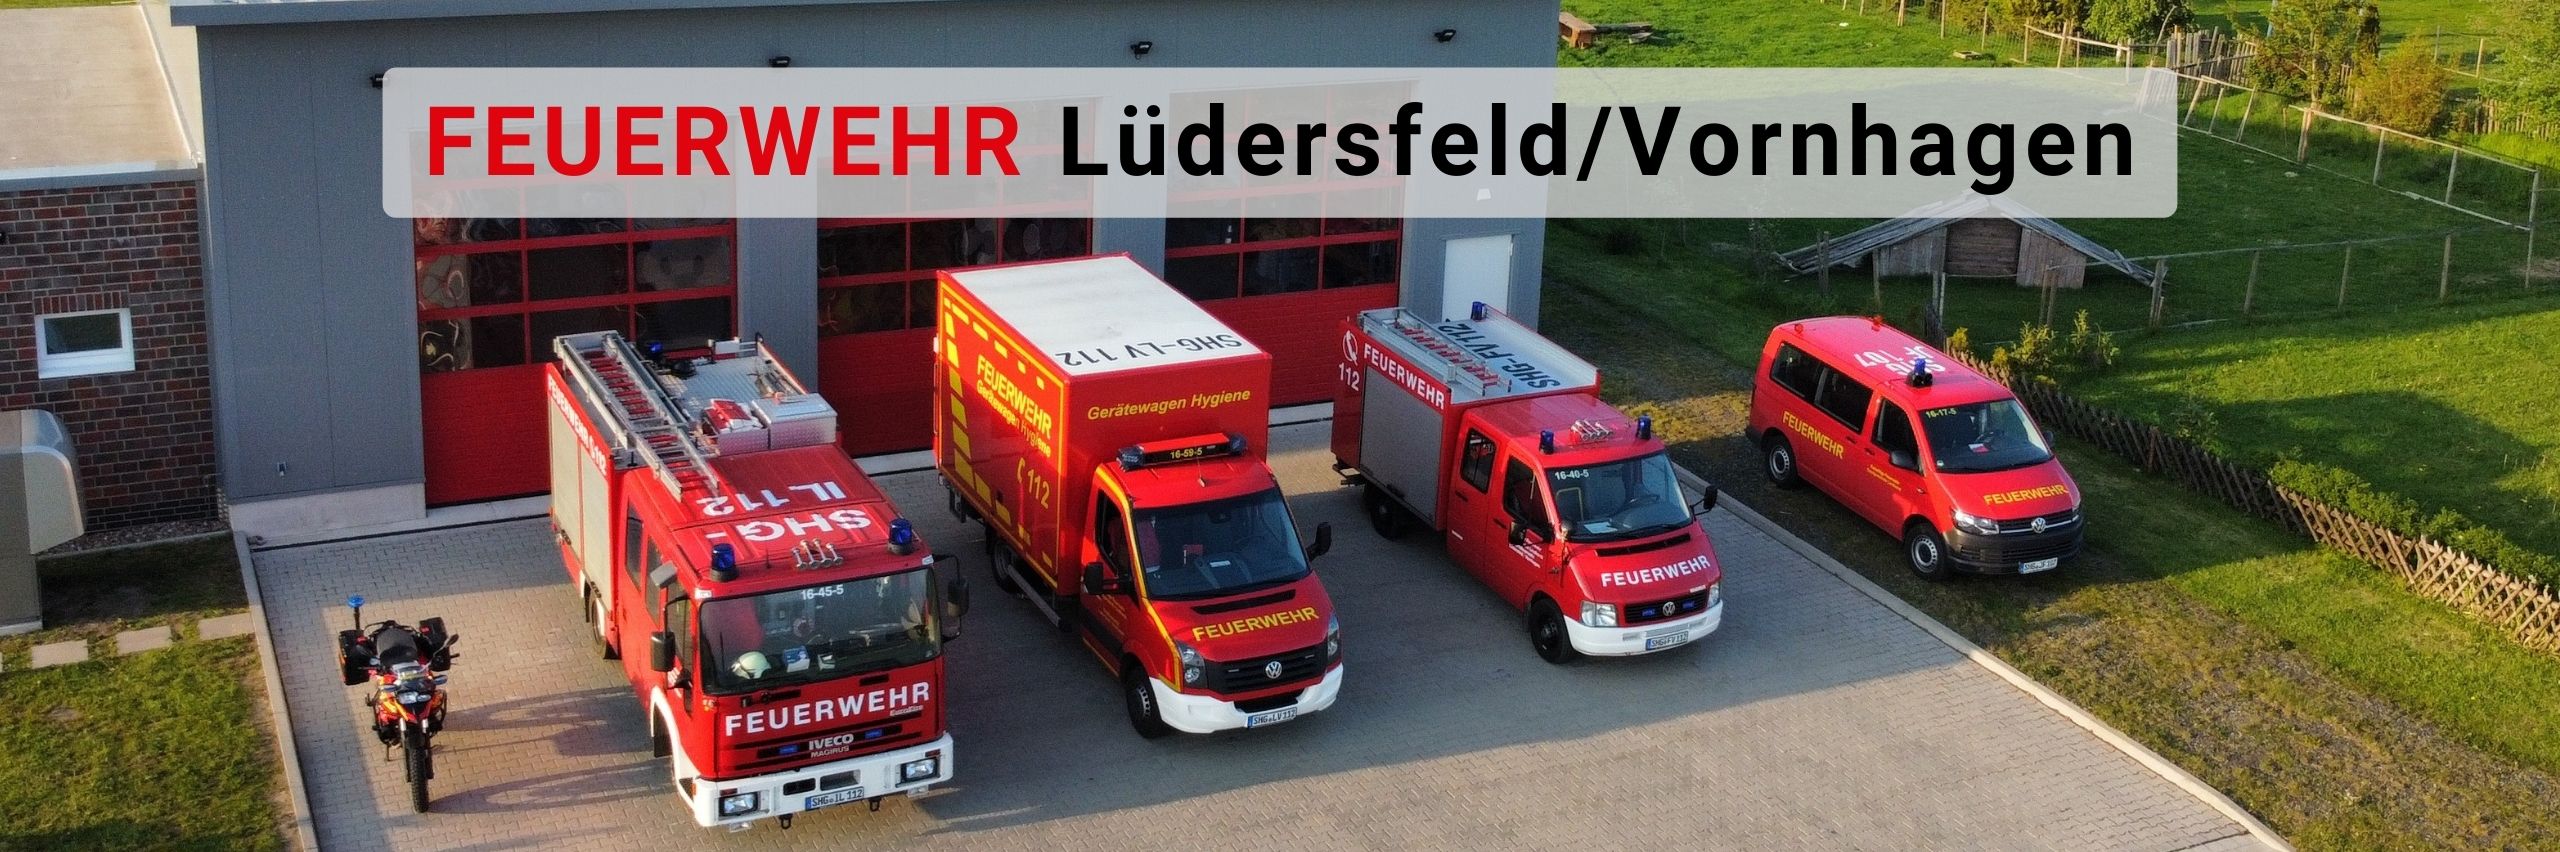 Feuerwehr Lüdersfeld/Vornhagen